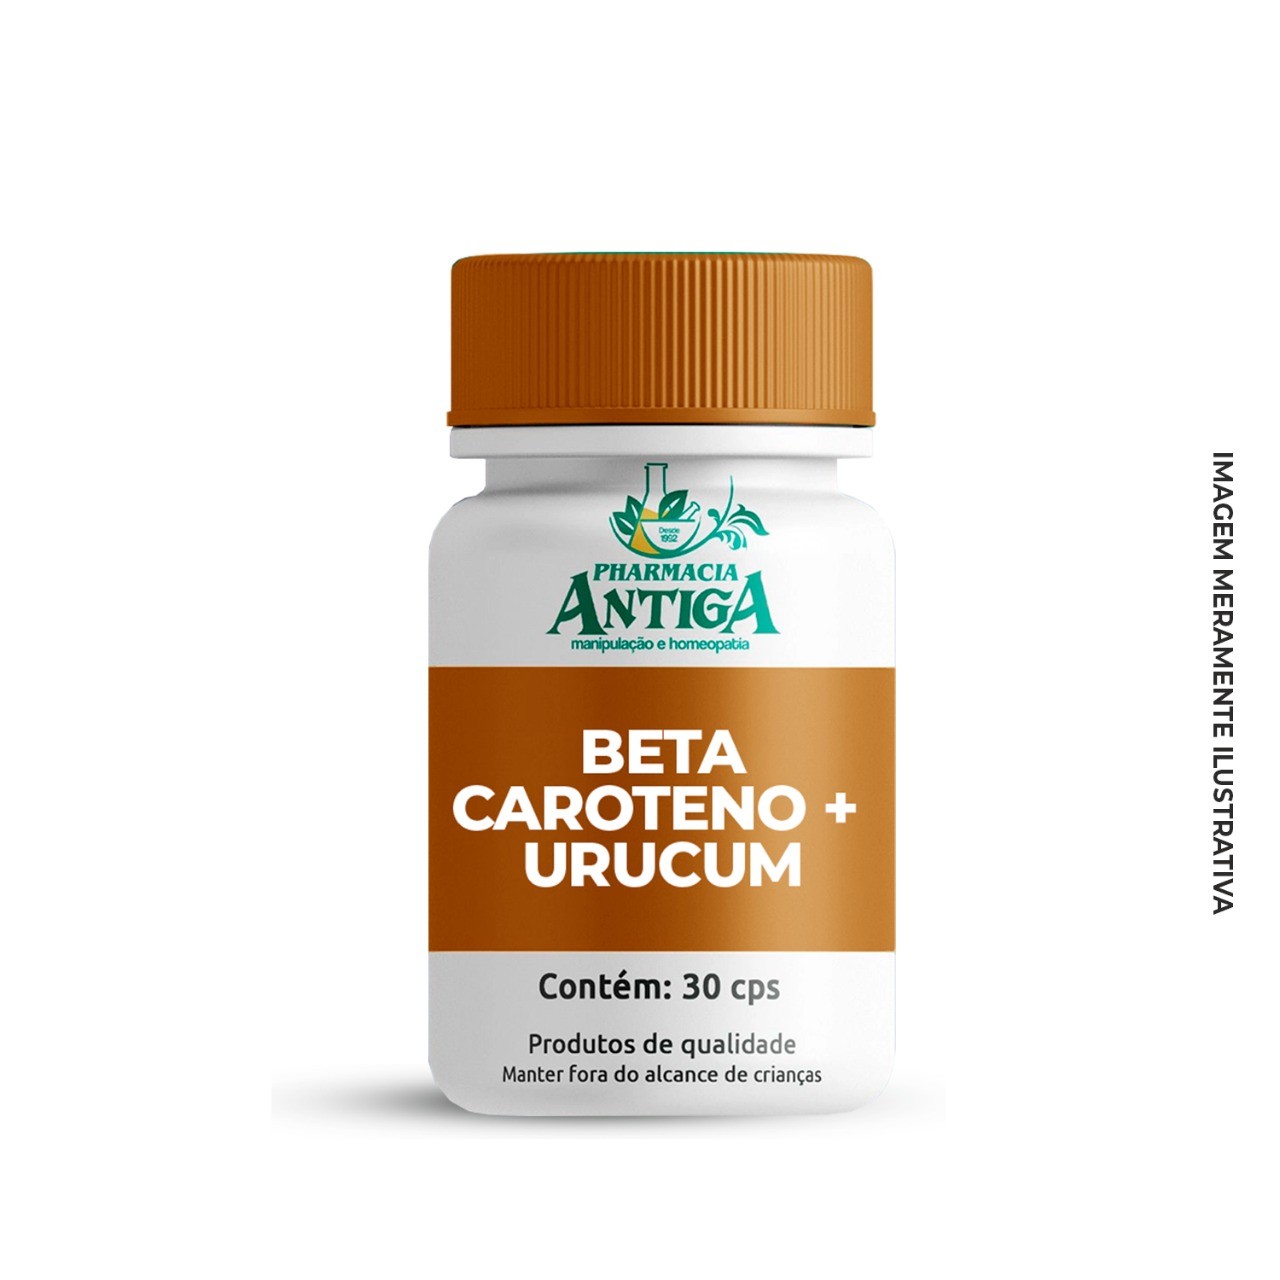 Urucum + Beta caroteno - 30 cps